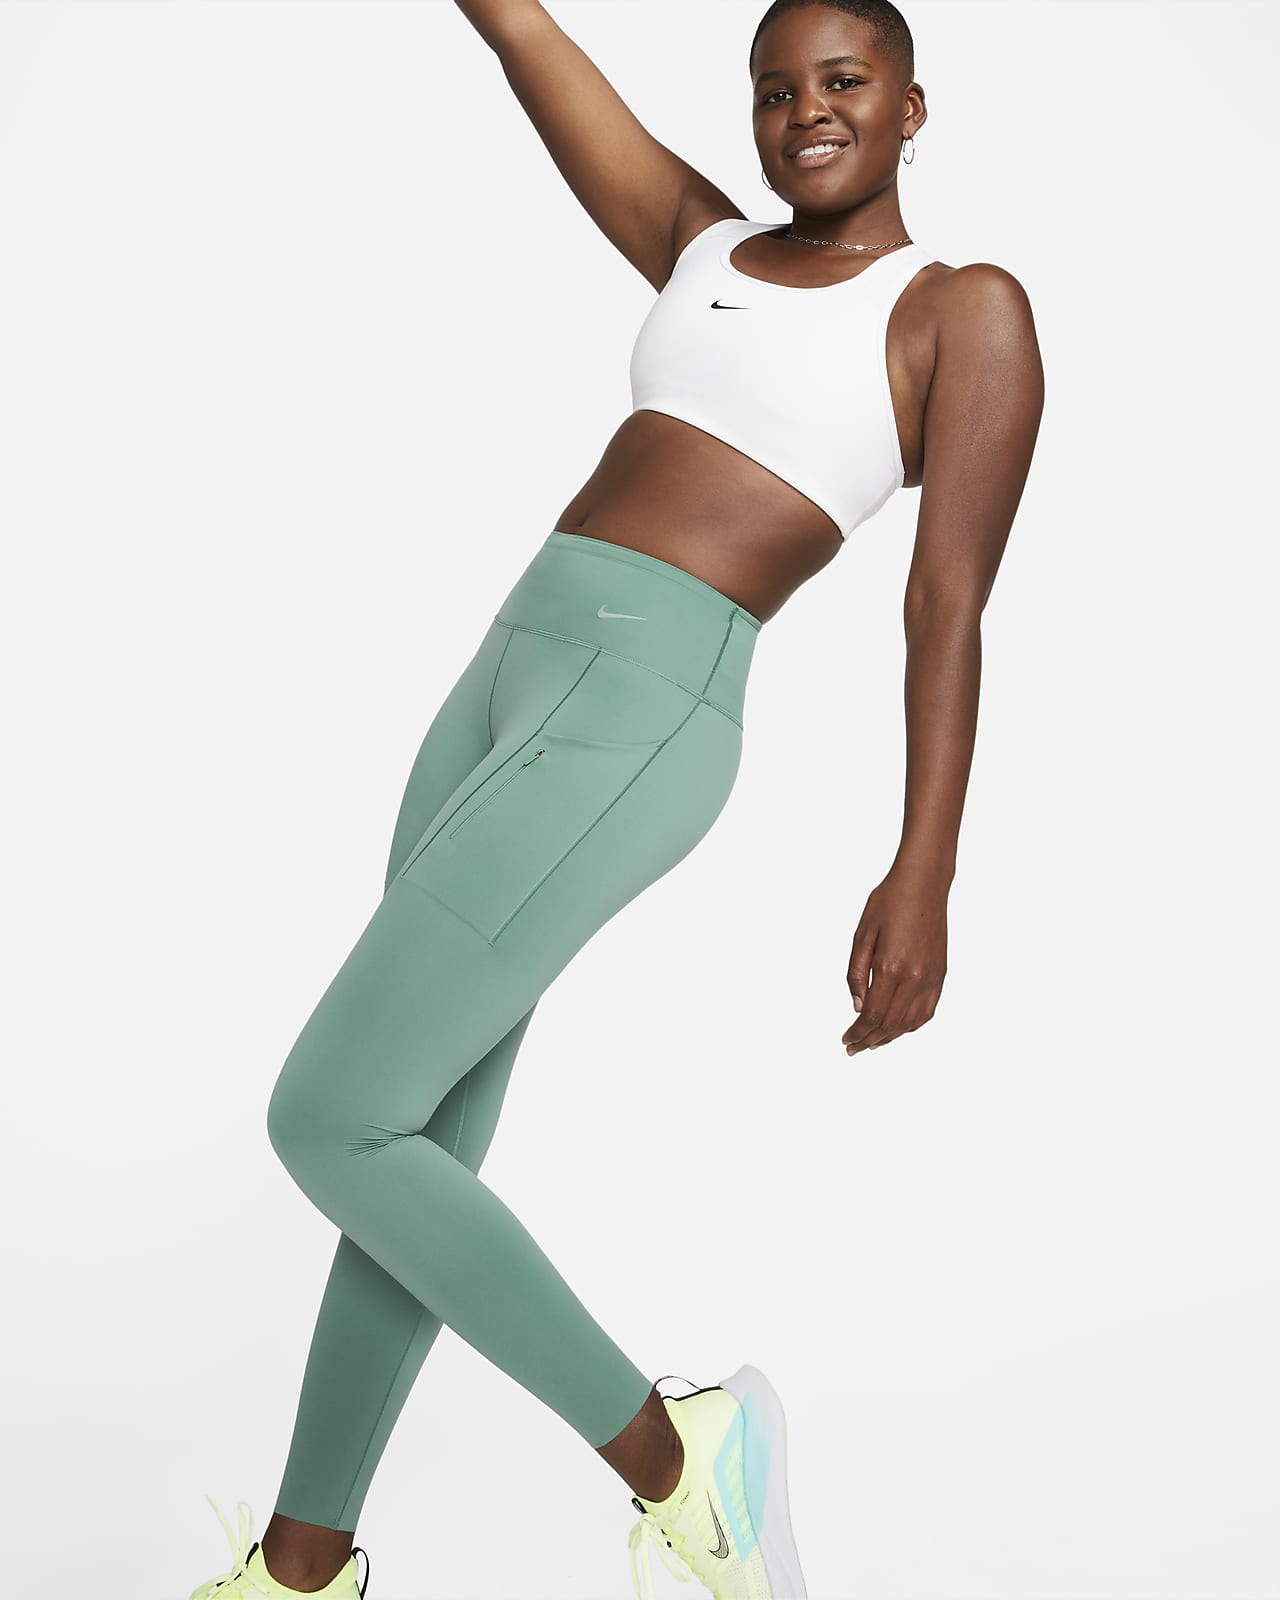 Dámské legíny Nike Go s plnou délkou, středně vysokým pasem, silnou oporou a kapsami